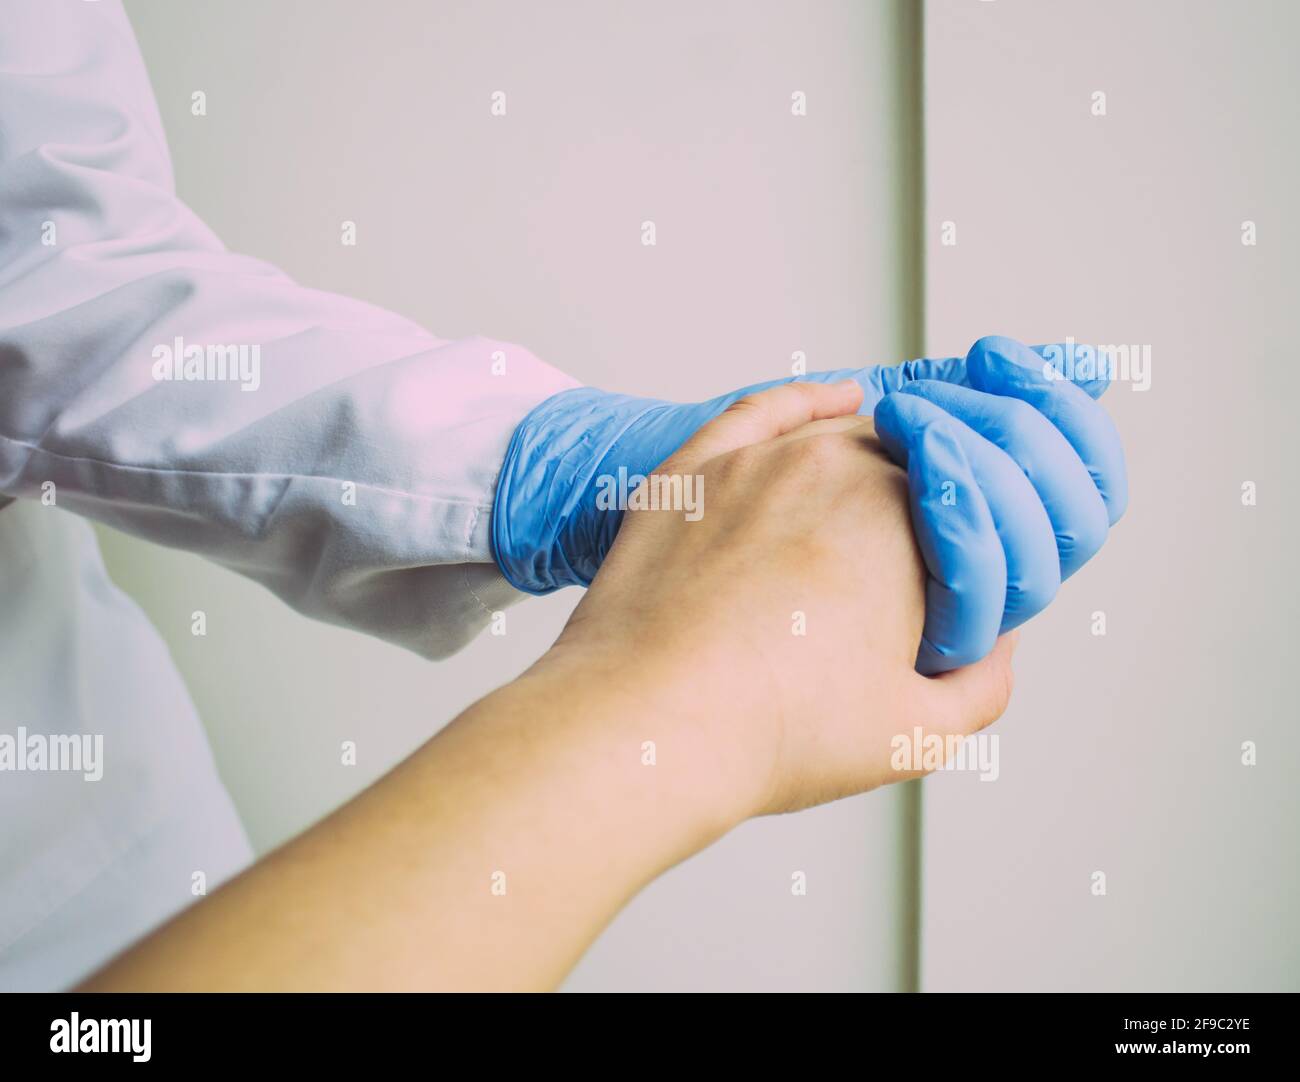 Die Hand einer Frau, die die Hand eines Arztes mit einem blauen Handschuh hält Stockfoto